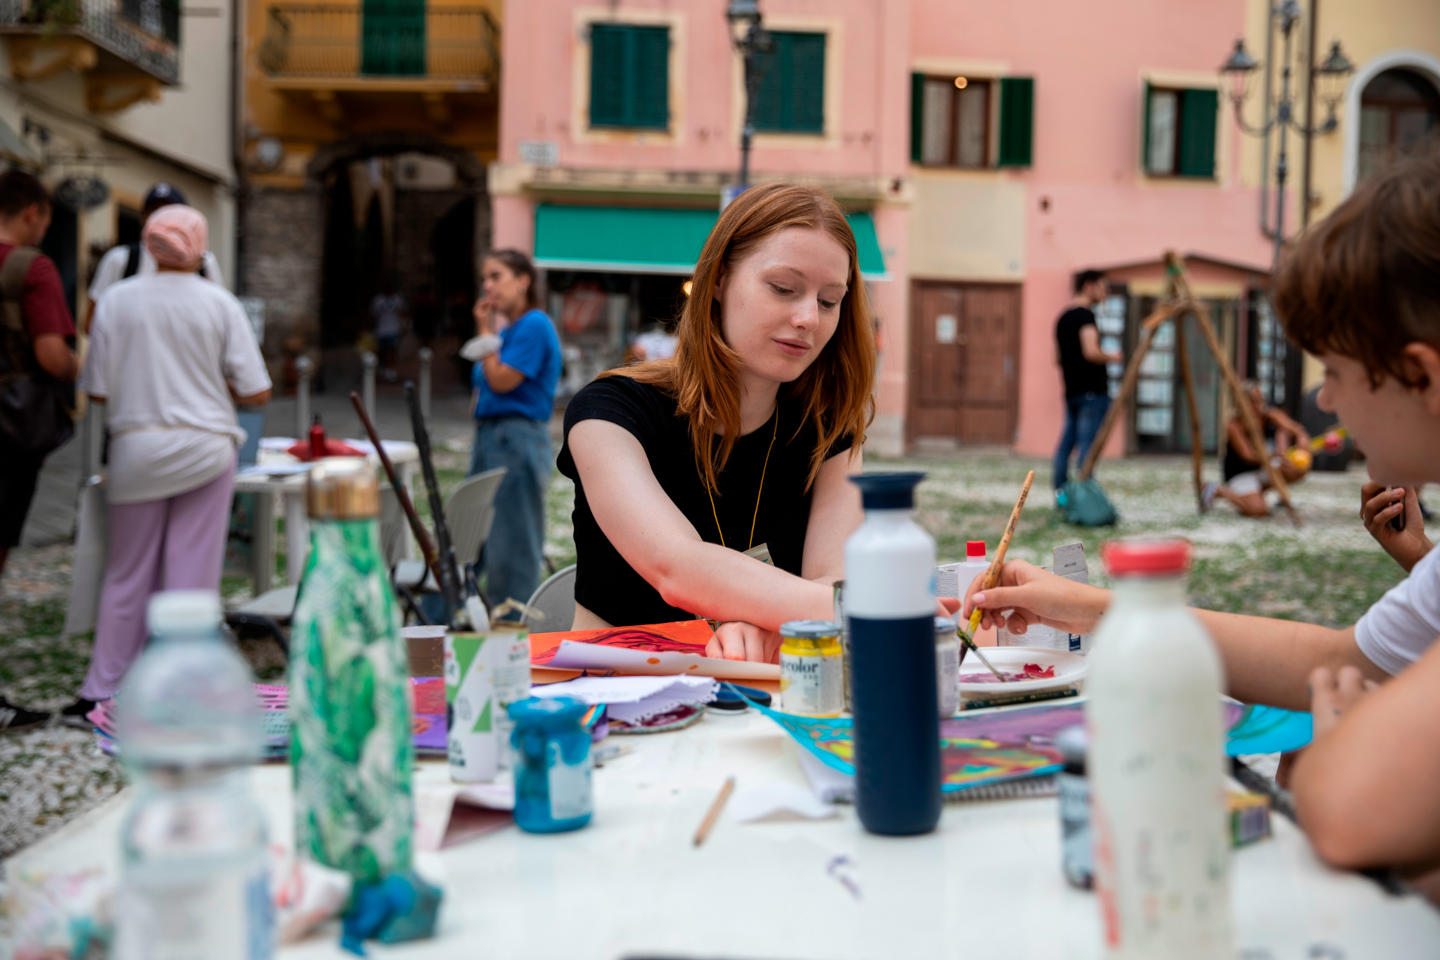 Jolanda che dipinge, durante Scambi Festival 2022